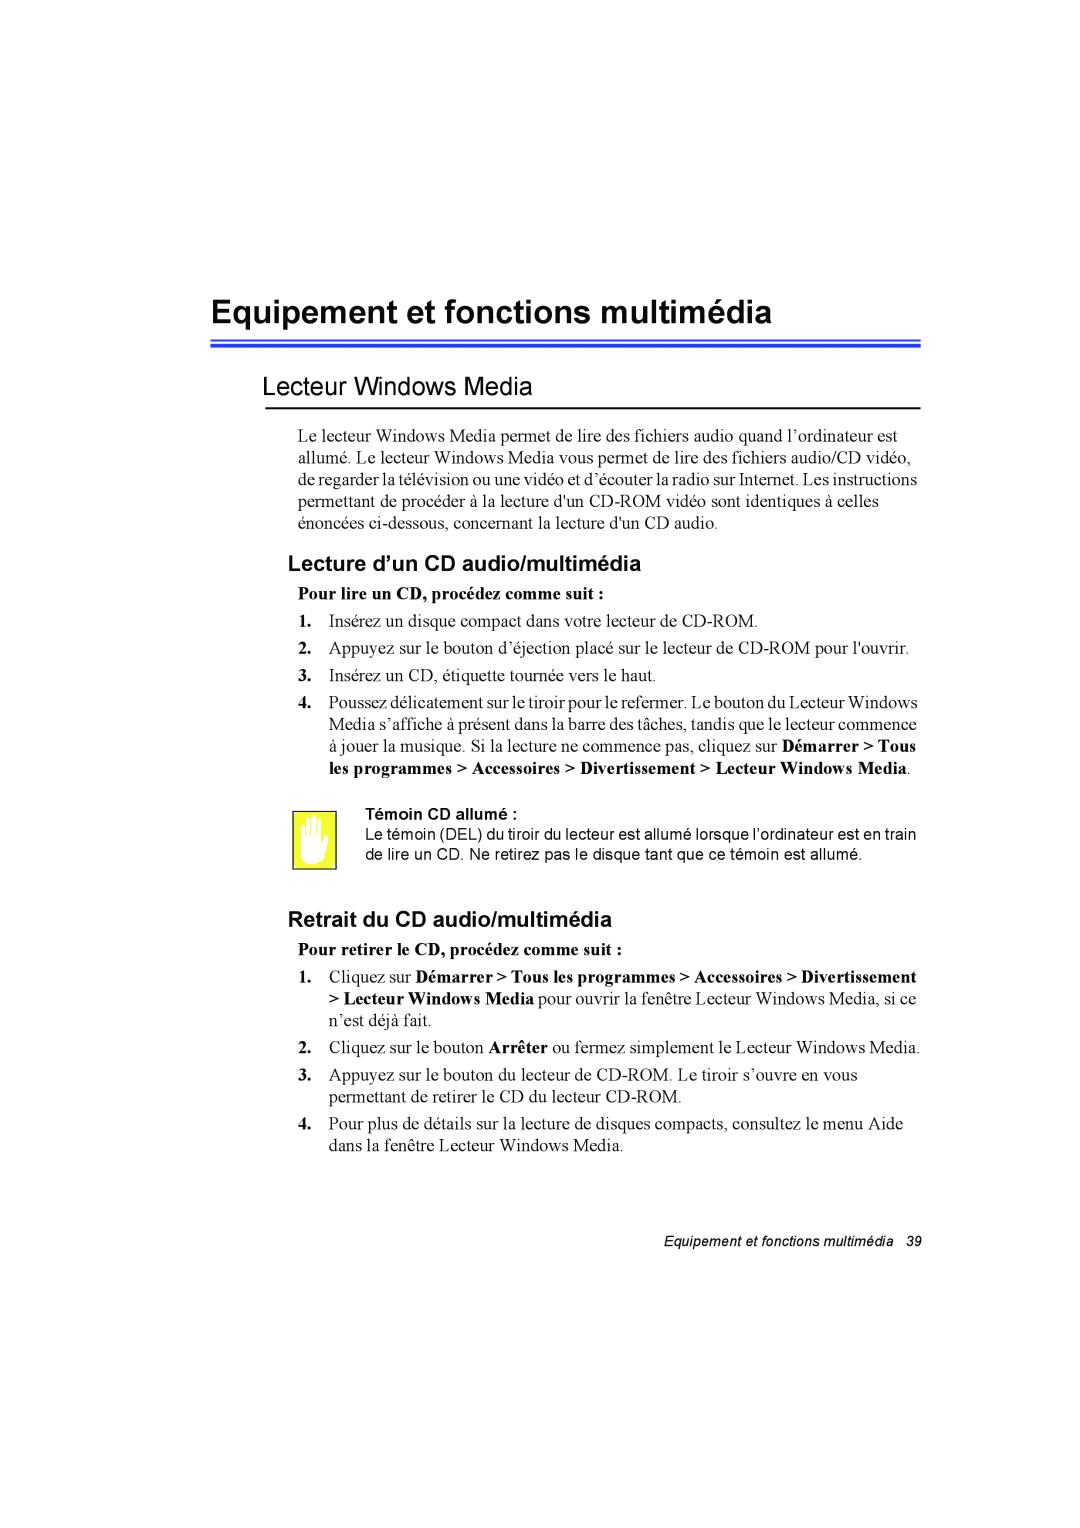 Samsung NP10FP018N/SEF manual Equipement et fonctions multimédia, Lecteur Windows Media, Lecture d’un CD audio/multimédia 